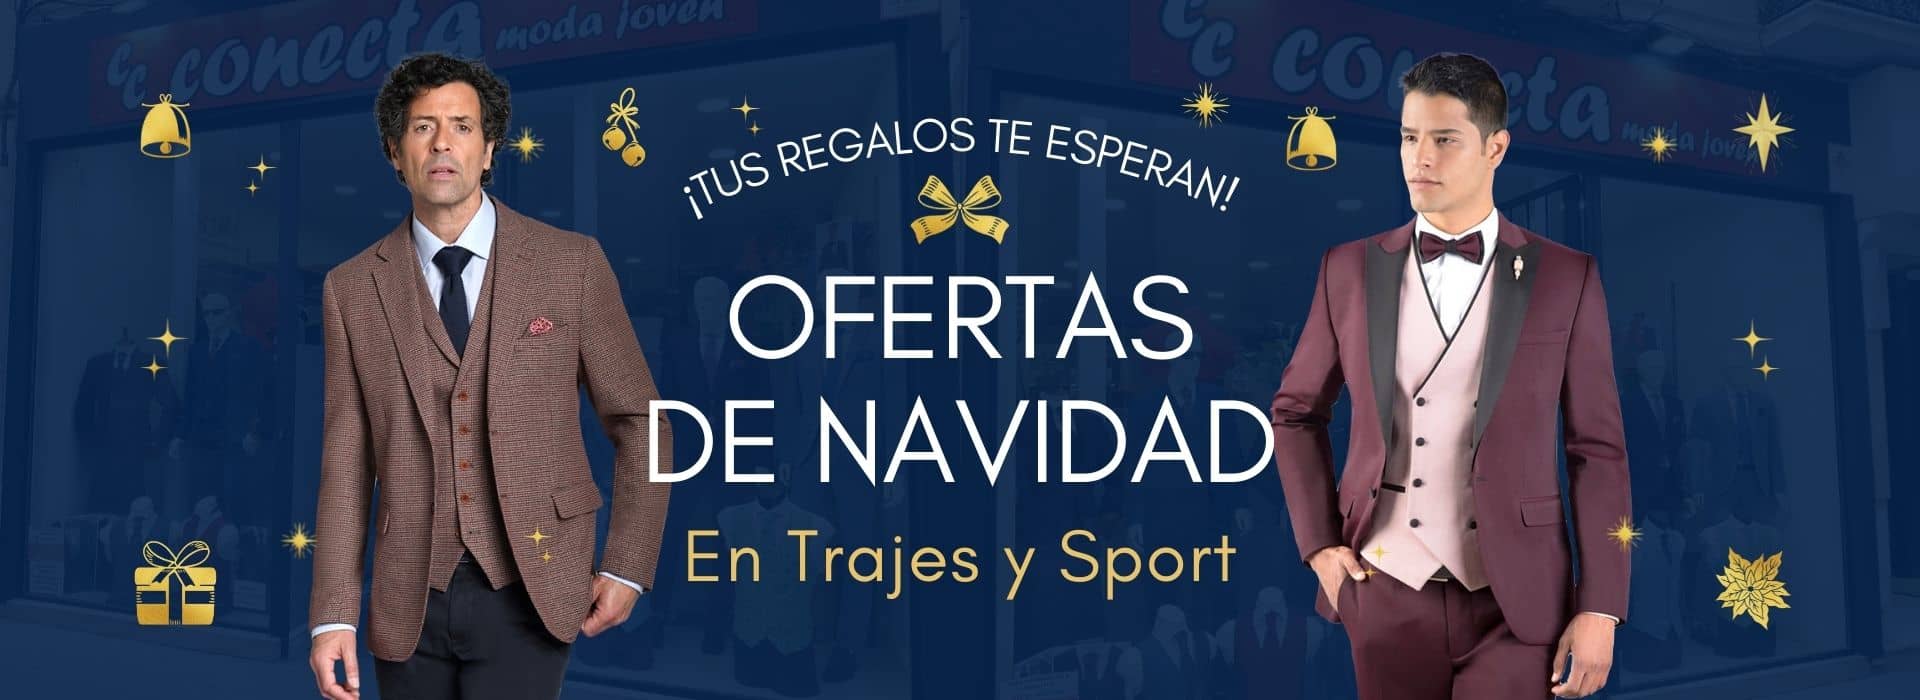 Ofertas de navidad en trajes y Sport - Conecta Moda Joven Granada